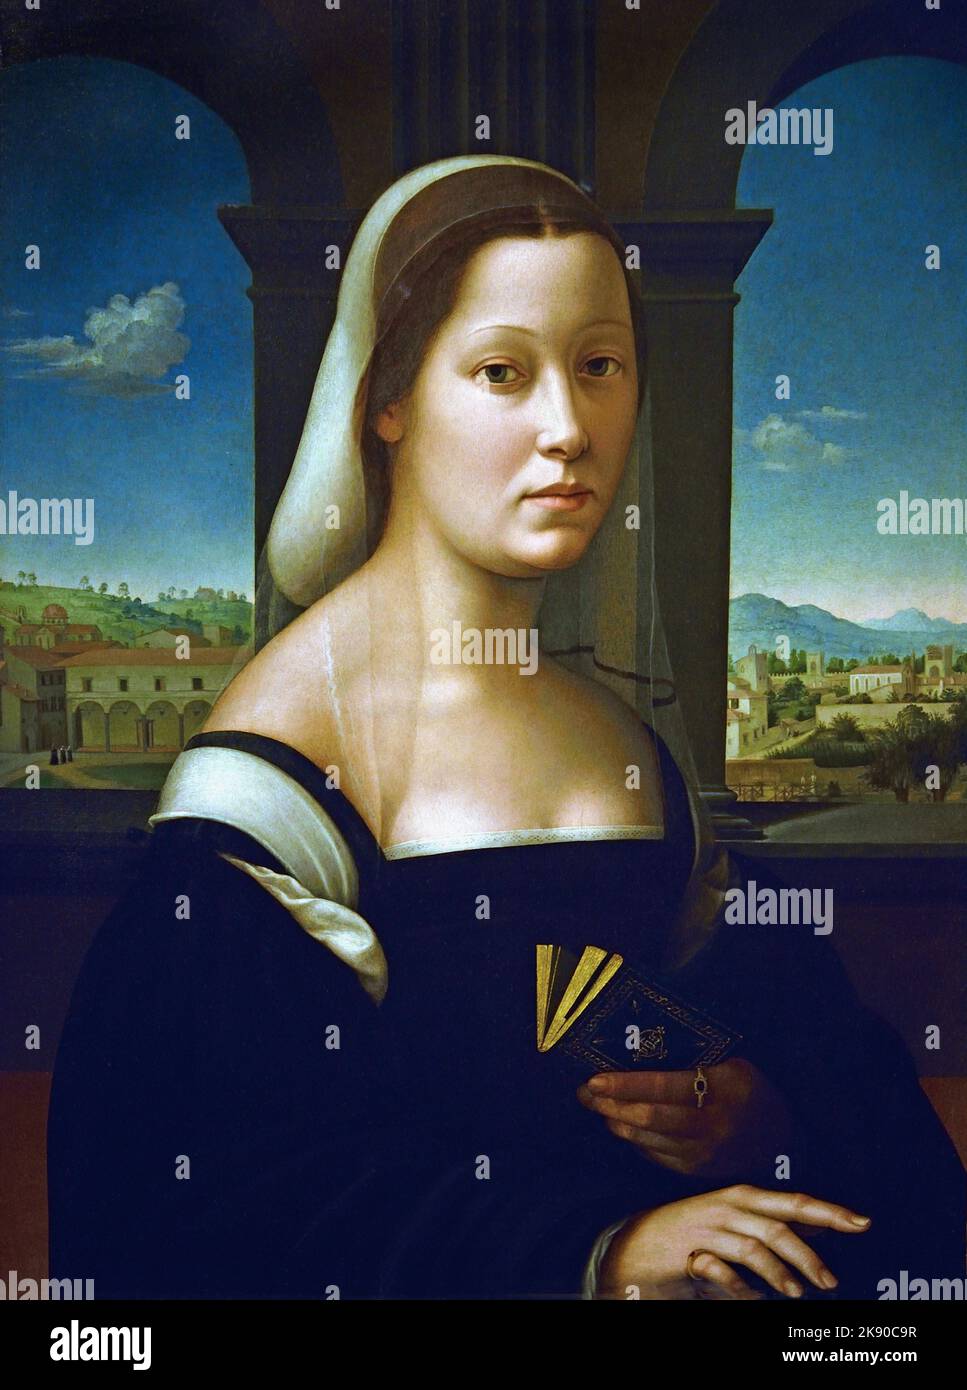 Frauenporträt, Uffizien, Florenz, von Giuliano Bugiardini 1475 –1555 Italienischer Maler und Zeichner, der im Stil der Spätrenaissance, bekannt als Manierismus, arbeitet. Stockfoto